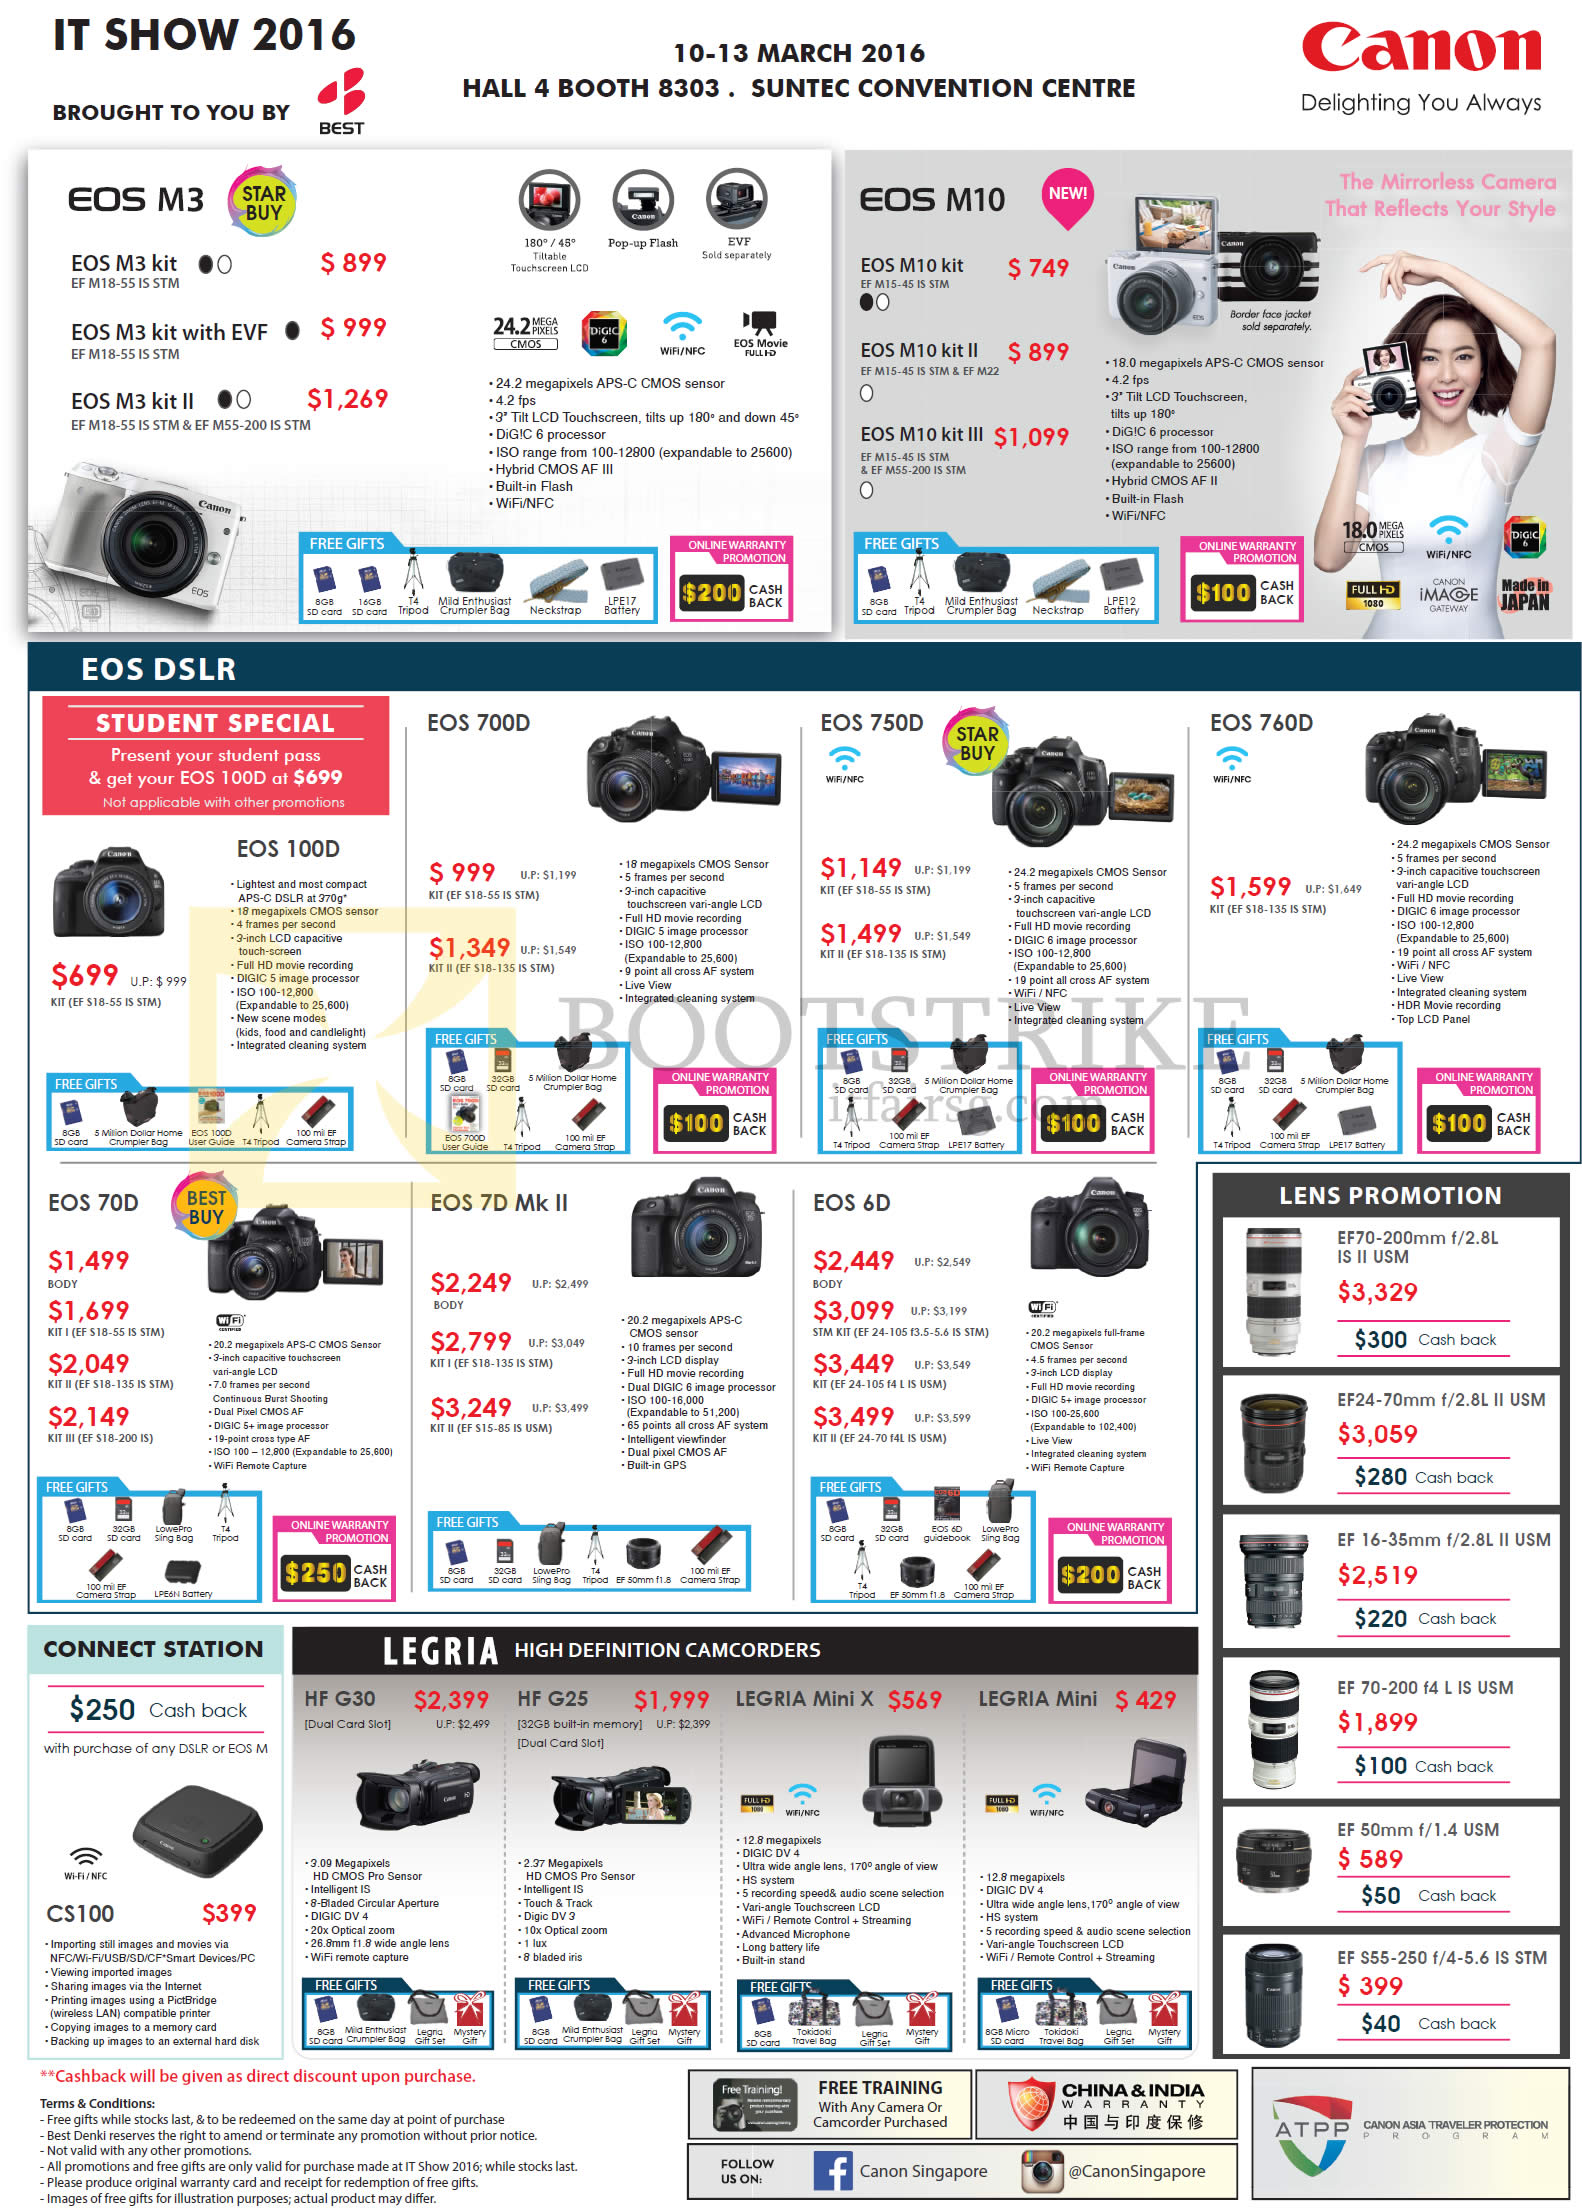 IT SHOW 2016 price list image brochure of Canon Digital Cameras, Camcorders, EOS M3, M10, 100D, 700D, 760D, 70D, 7D MK II, 6D, CS100, HF G30, G25, Legria Mini X, Mini